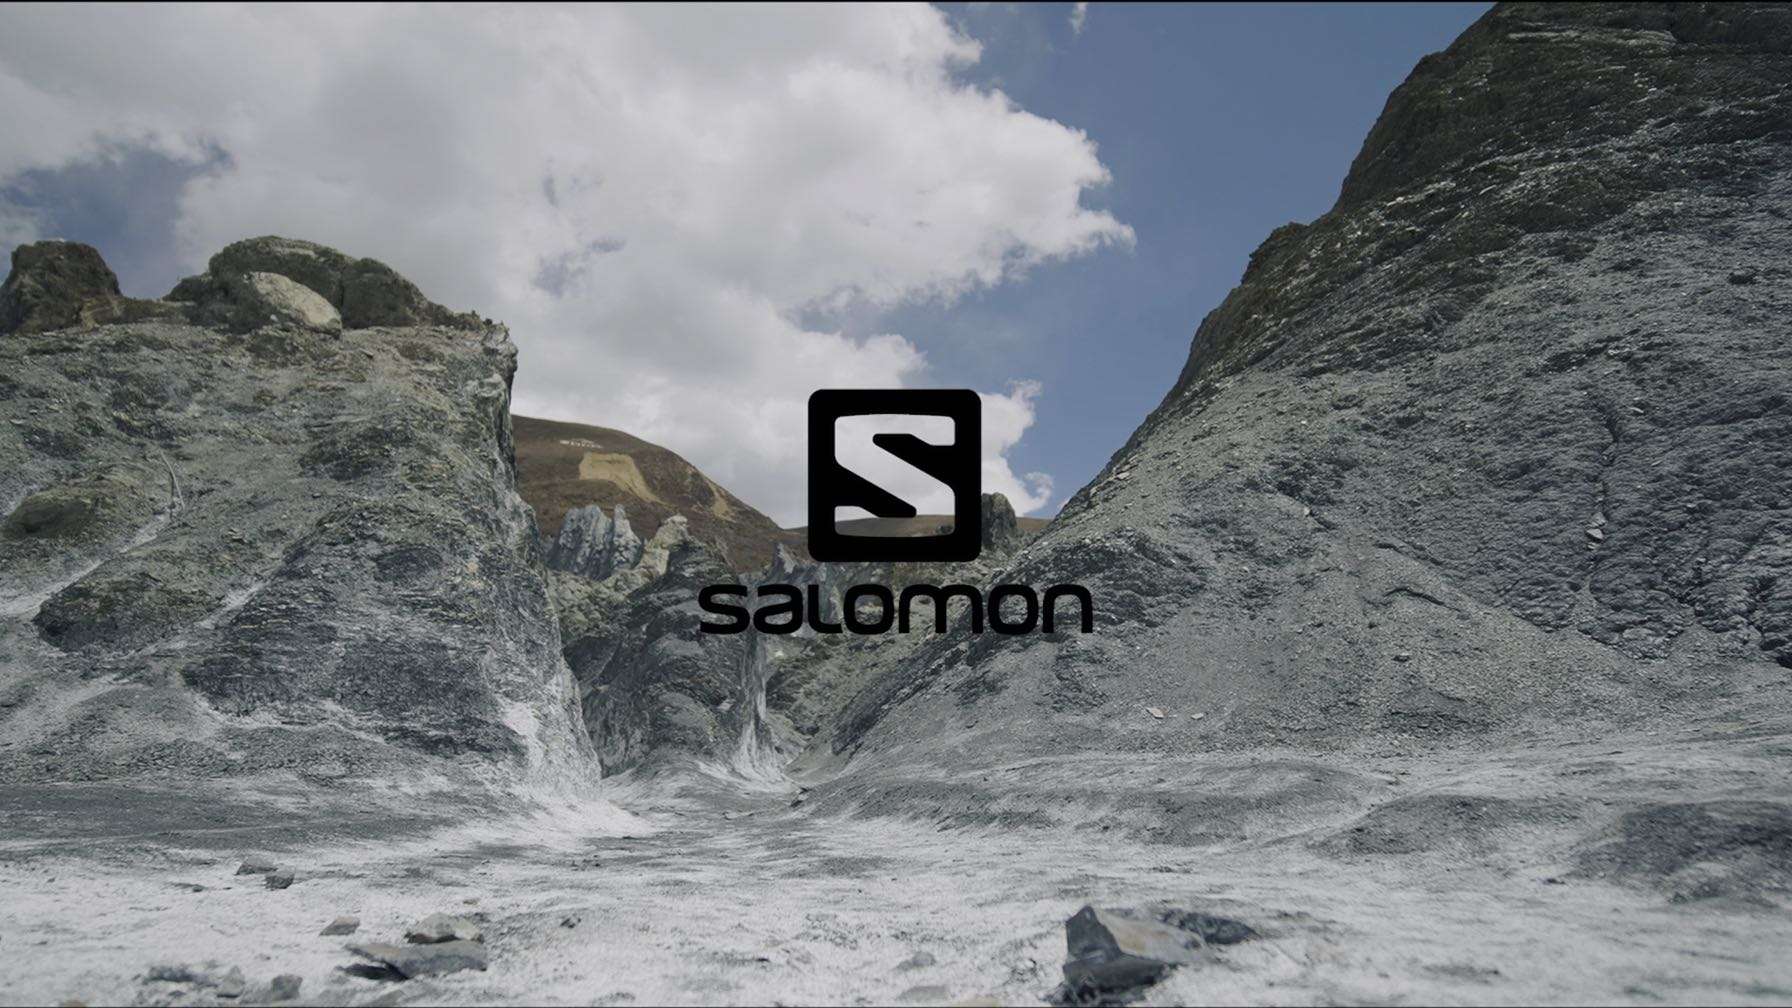 萨洛蒙 Salomon campaign